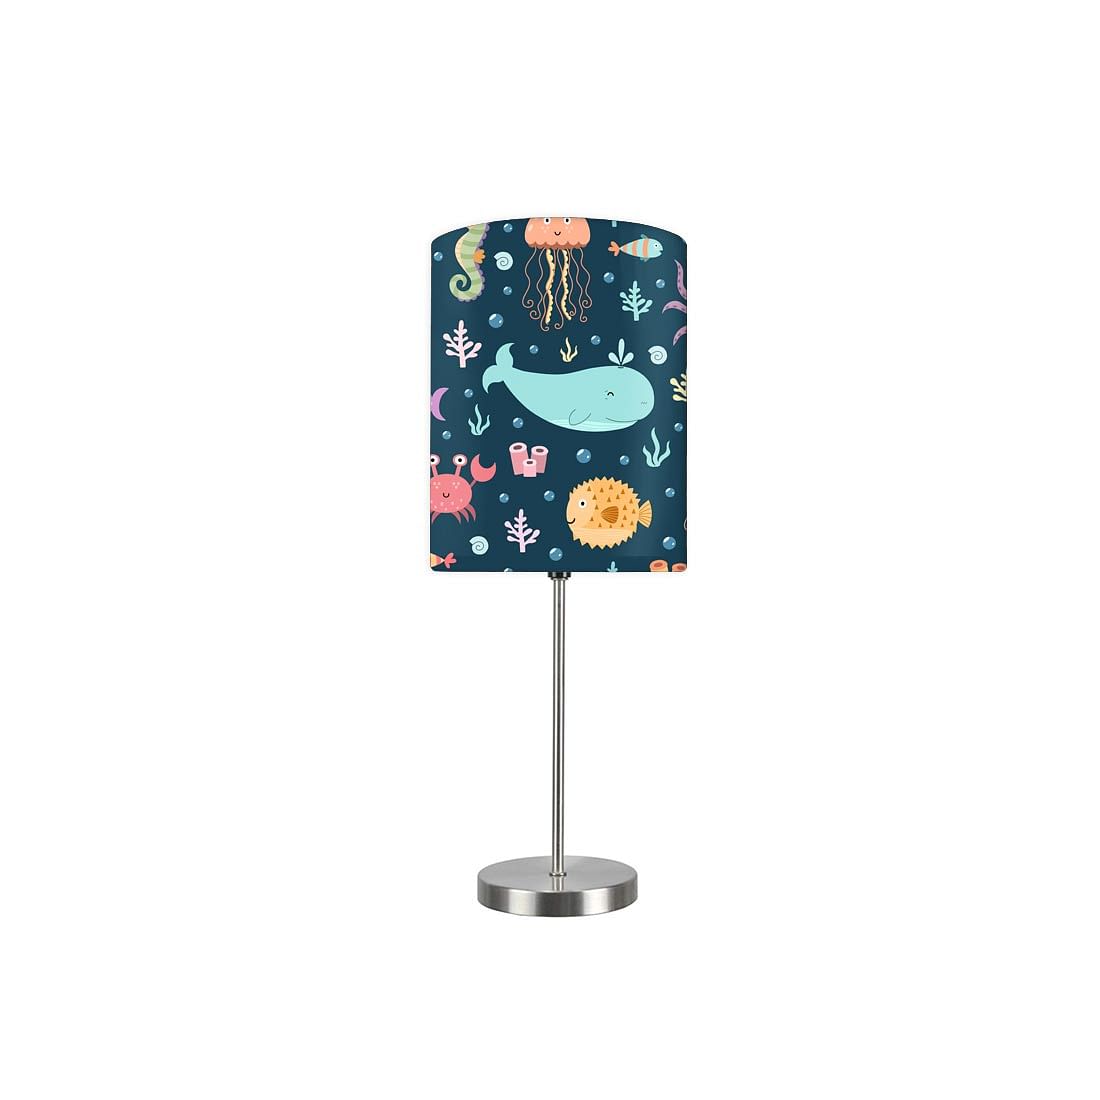 Designer Childrens Bedside Lamp Lights - 0045 Nutcase